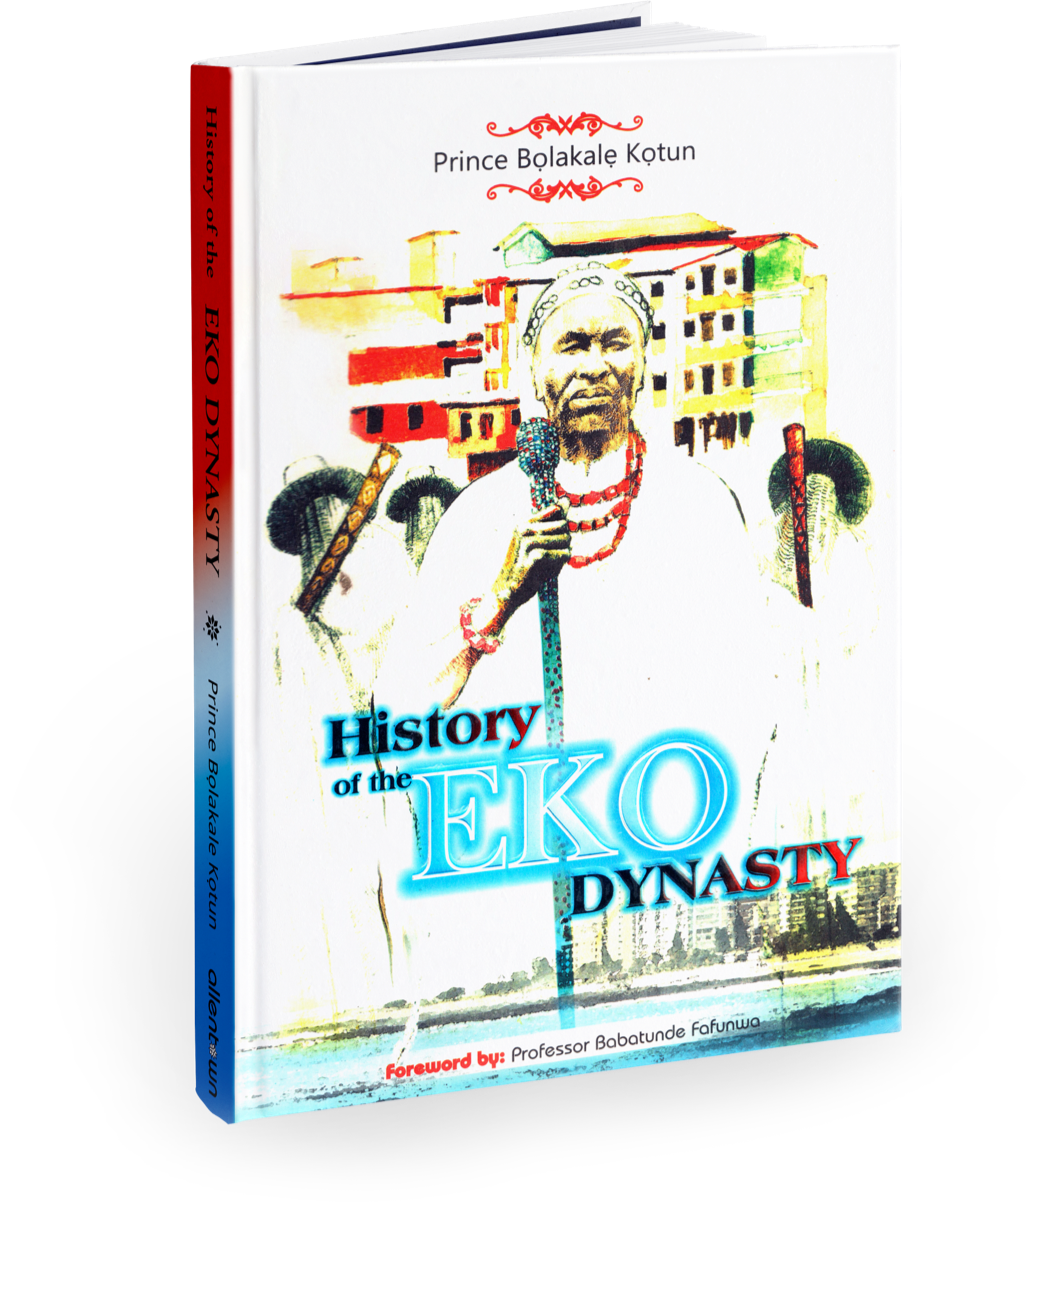 History of Eko Dynasty